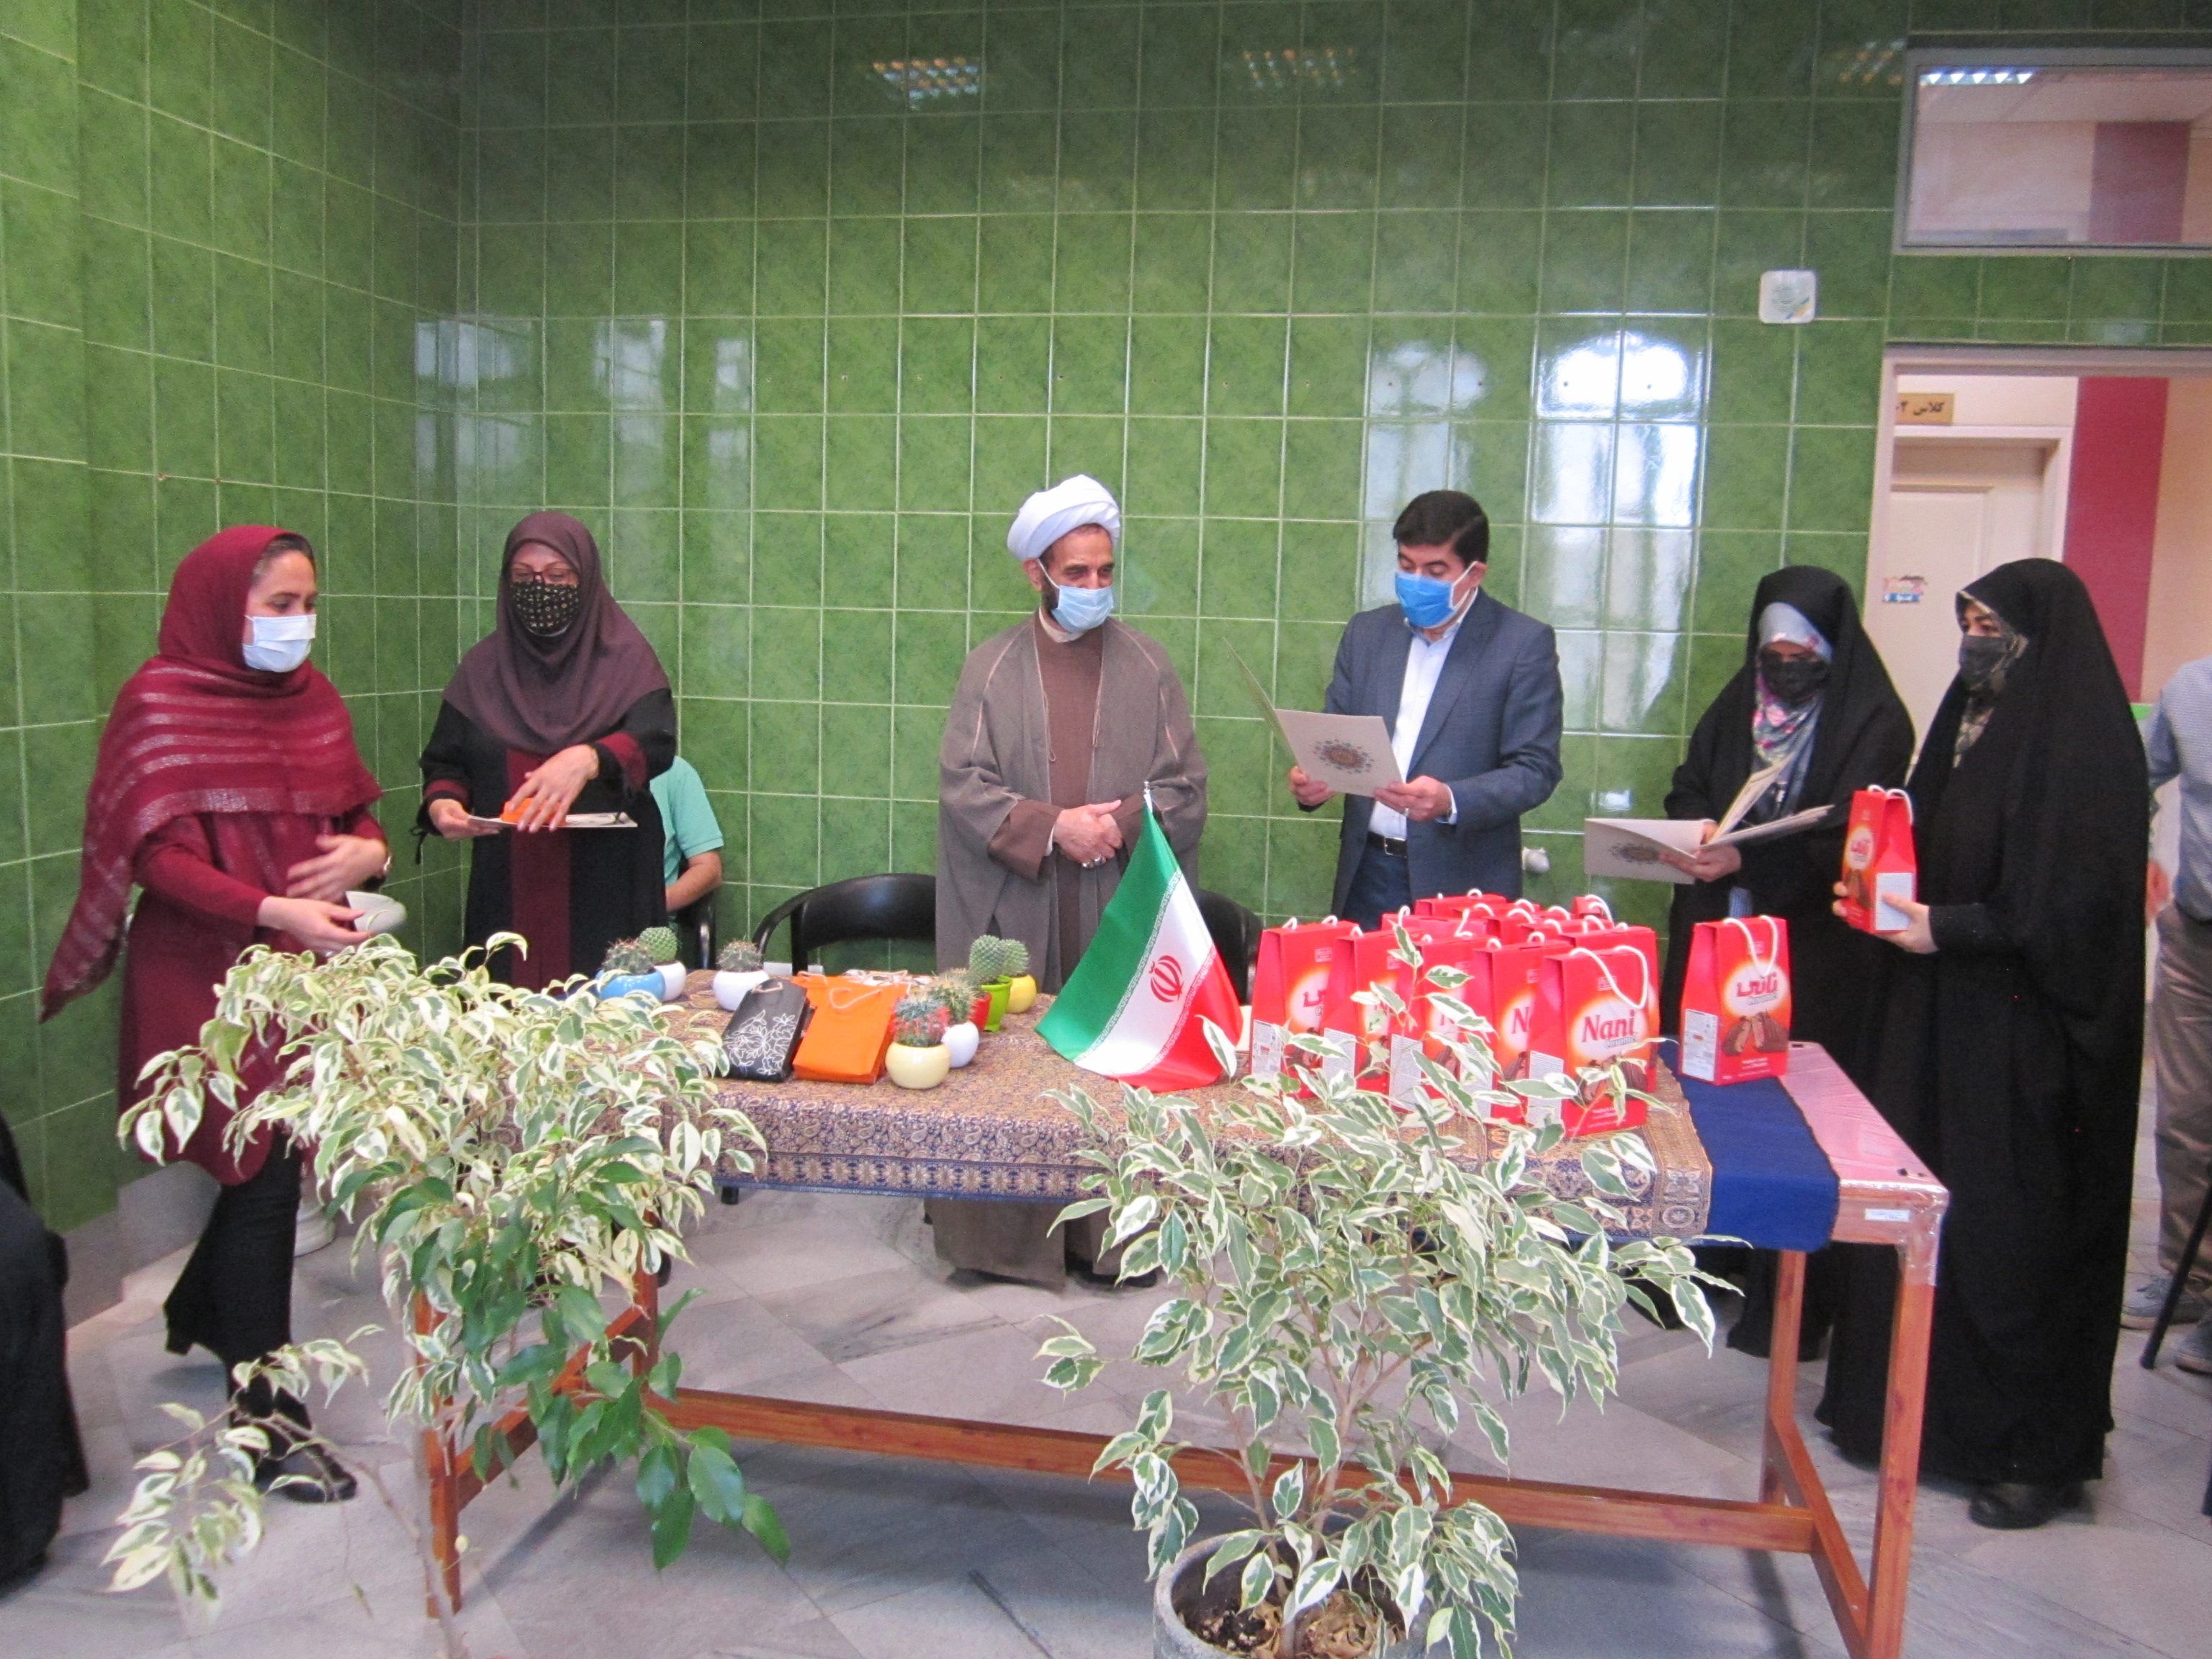 مدیرکل آموزش و پرورش شهرستانهای استان تهران: تکریم و بزرگداشت مقام معلم باید شامل همه معلمان شود